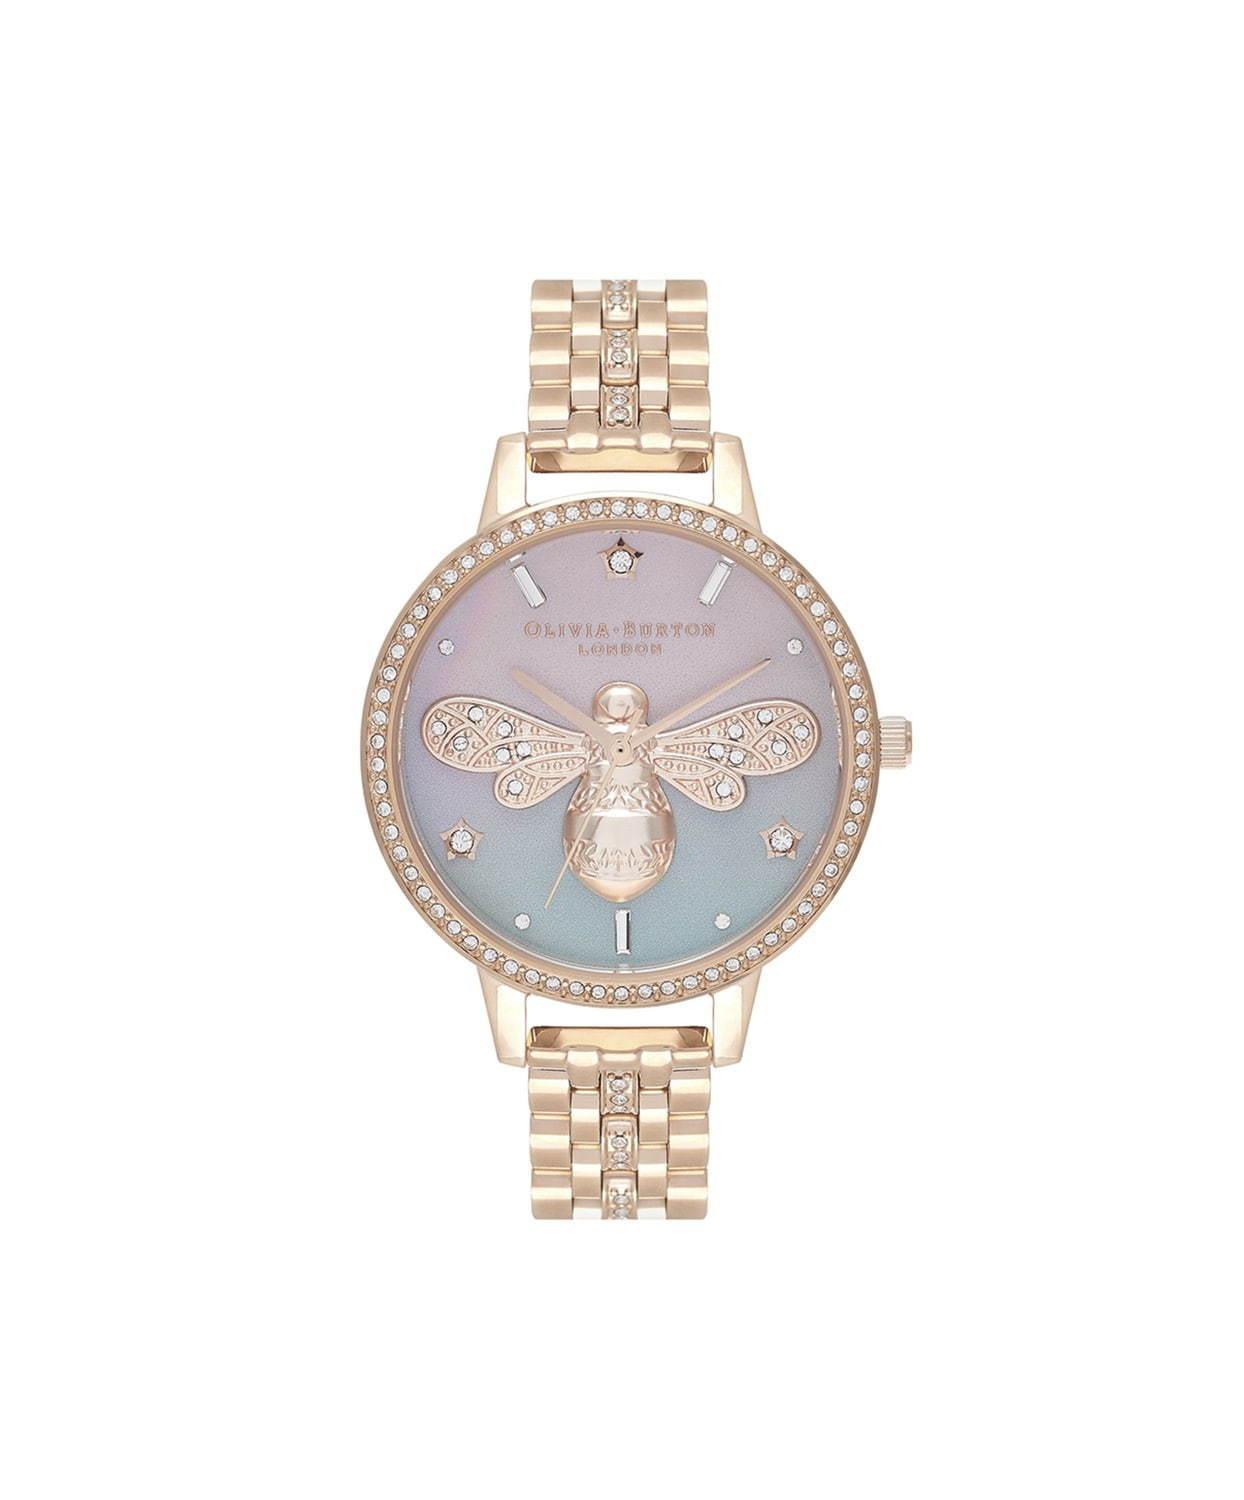 オリビア・バートンの新作腕時計、“オーロラと夜空”＆グリッターきらめくロリポップ着想ダイアル コピー